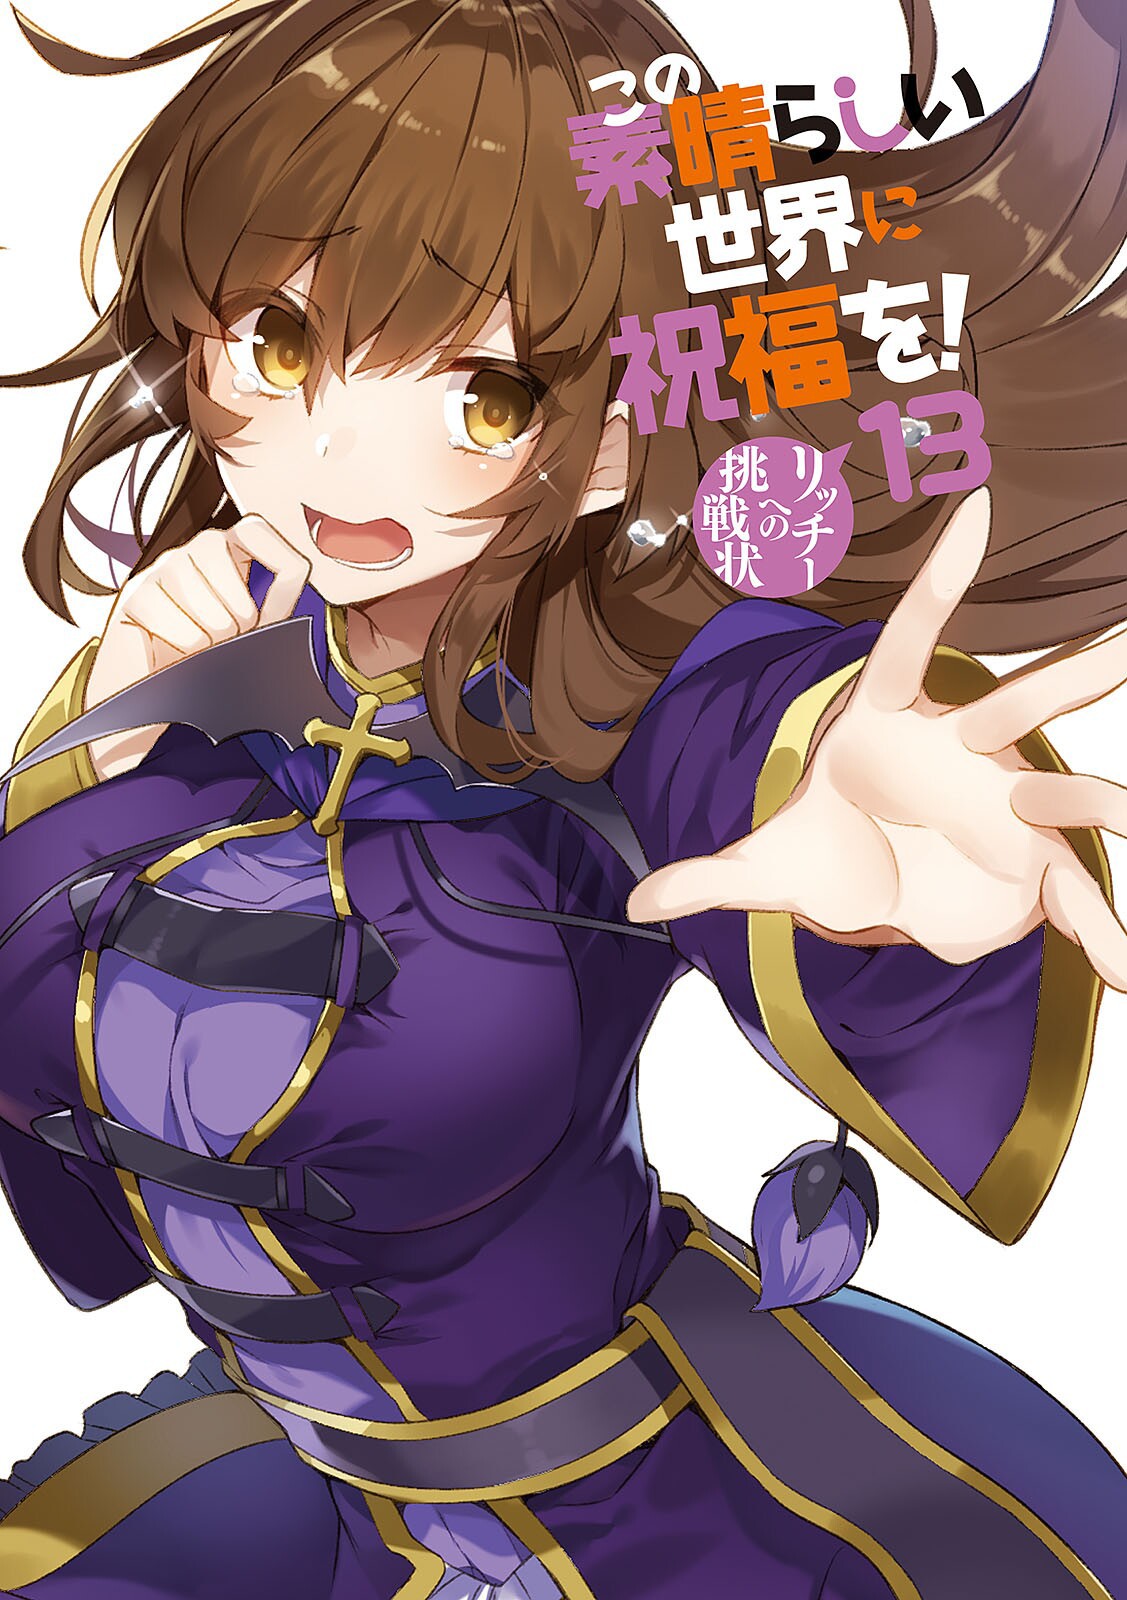 konosuba light novel